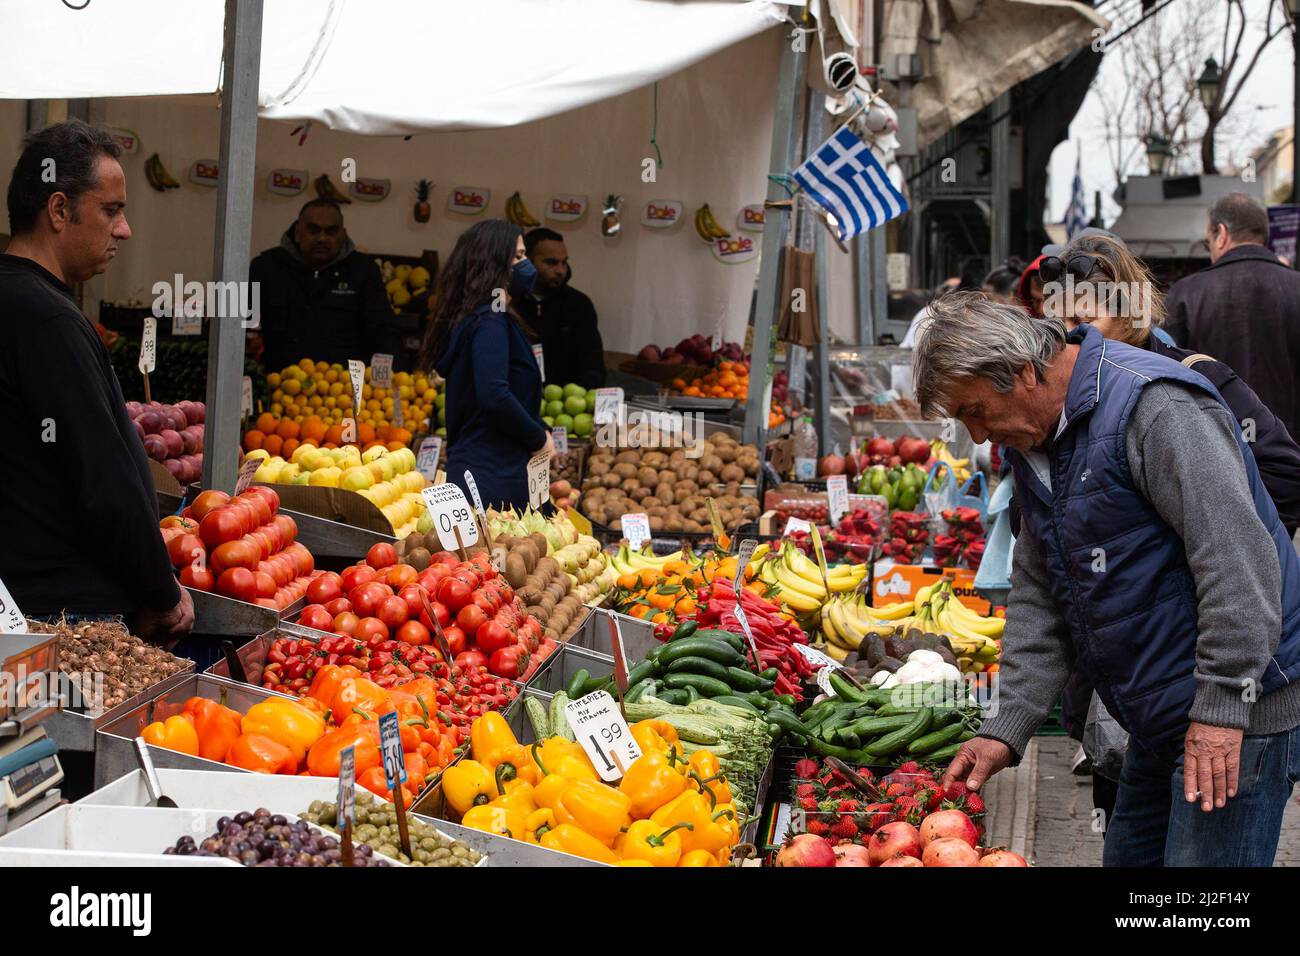 (220401) -- ATHEN, 1. April 2022 (Xinhua) -- Ein Mann kauft Gemüse auf einem Markt in Athen, Griechenland, 31. März 2022. Jüngste Zahlen der Hellenischen Statistischen Behörde (ELSTAT) zeigten, dass die jährliche Inflationsrate Griechenlands im Februar auf 7,2 Prozent gestiegen ist und damit ein 26-Jahres-hoch erreicht hat. Handwerker und Händler (GSEVEE) fordern eine bevorstehende Senkung der Kraftstoffsteuern und eine Obergrenze für Strom- und Erdgaspreise sowie eine genaue Überwachung des Lebensmittelbestands des Landes, wie Sonnenblumenöl und Mehl, um Profitgier zu verhindern Stockfoto